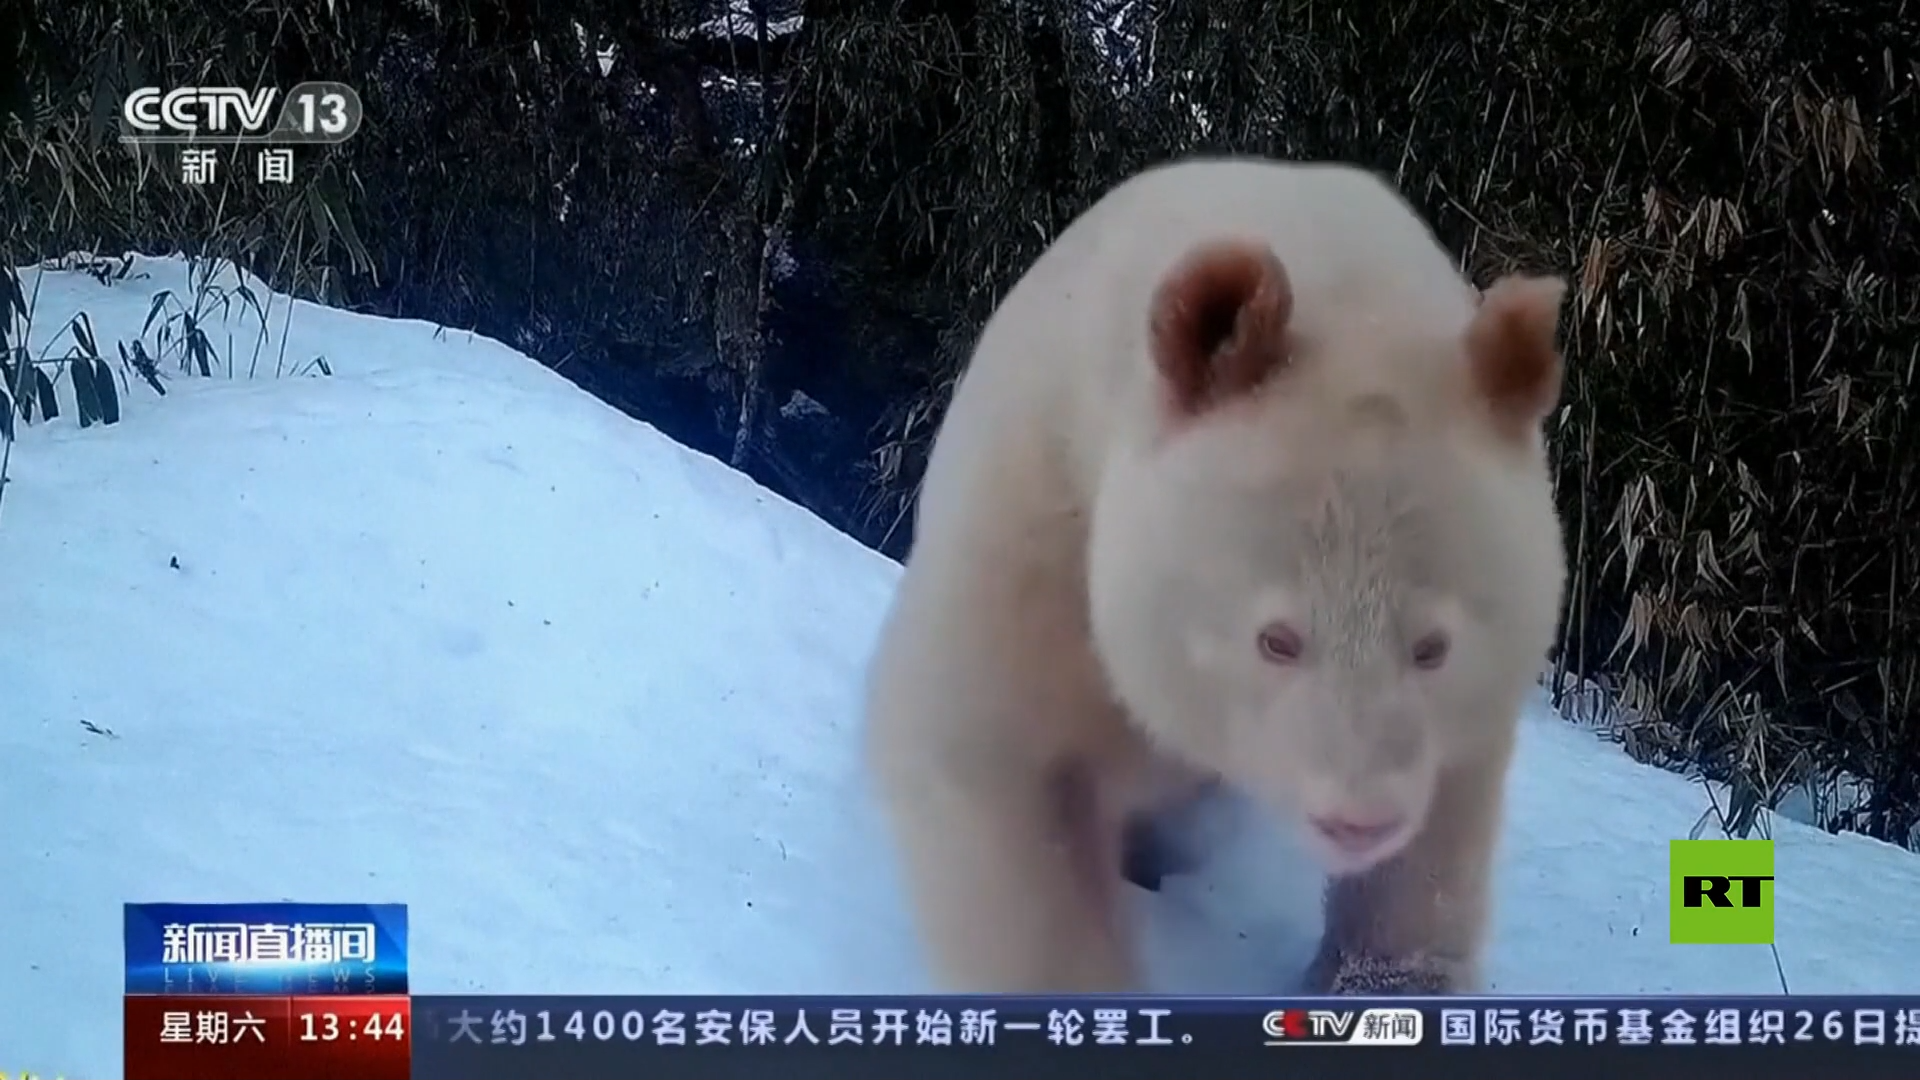 رصد الباندا البيضاء النادرة في محمية الصين